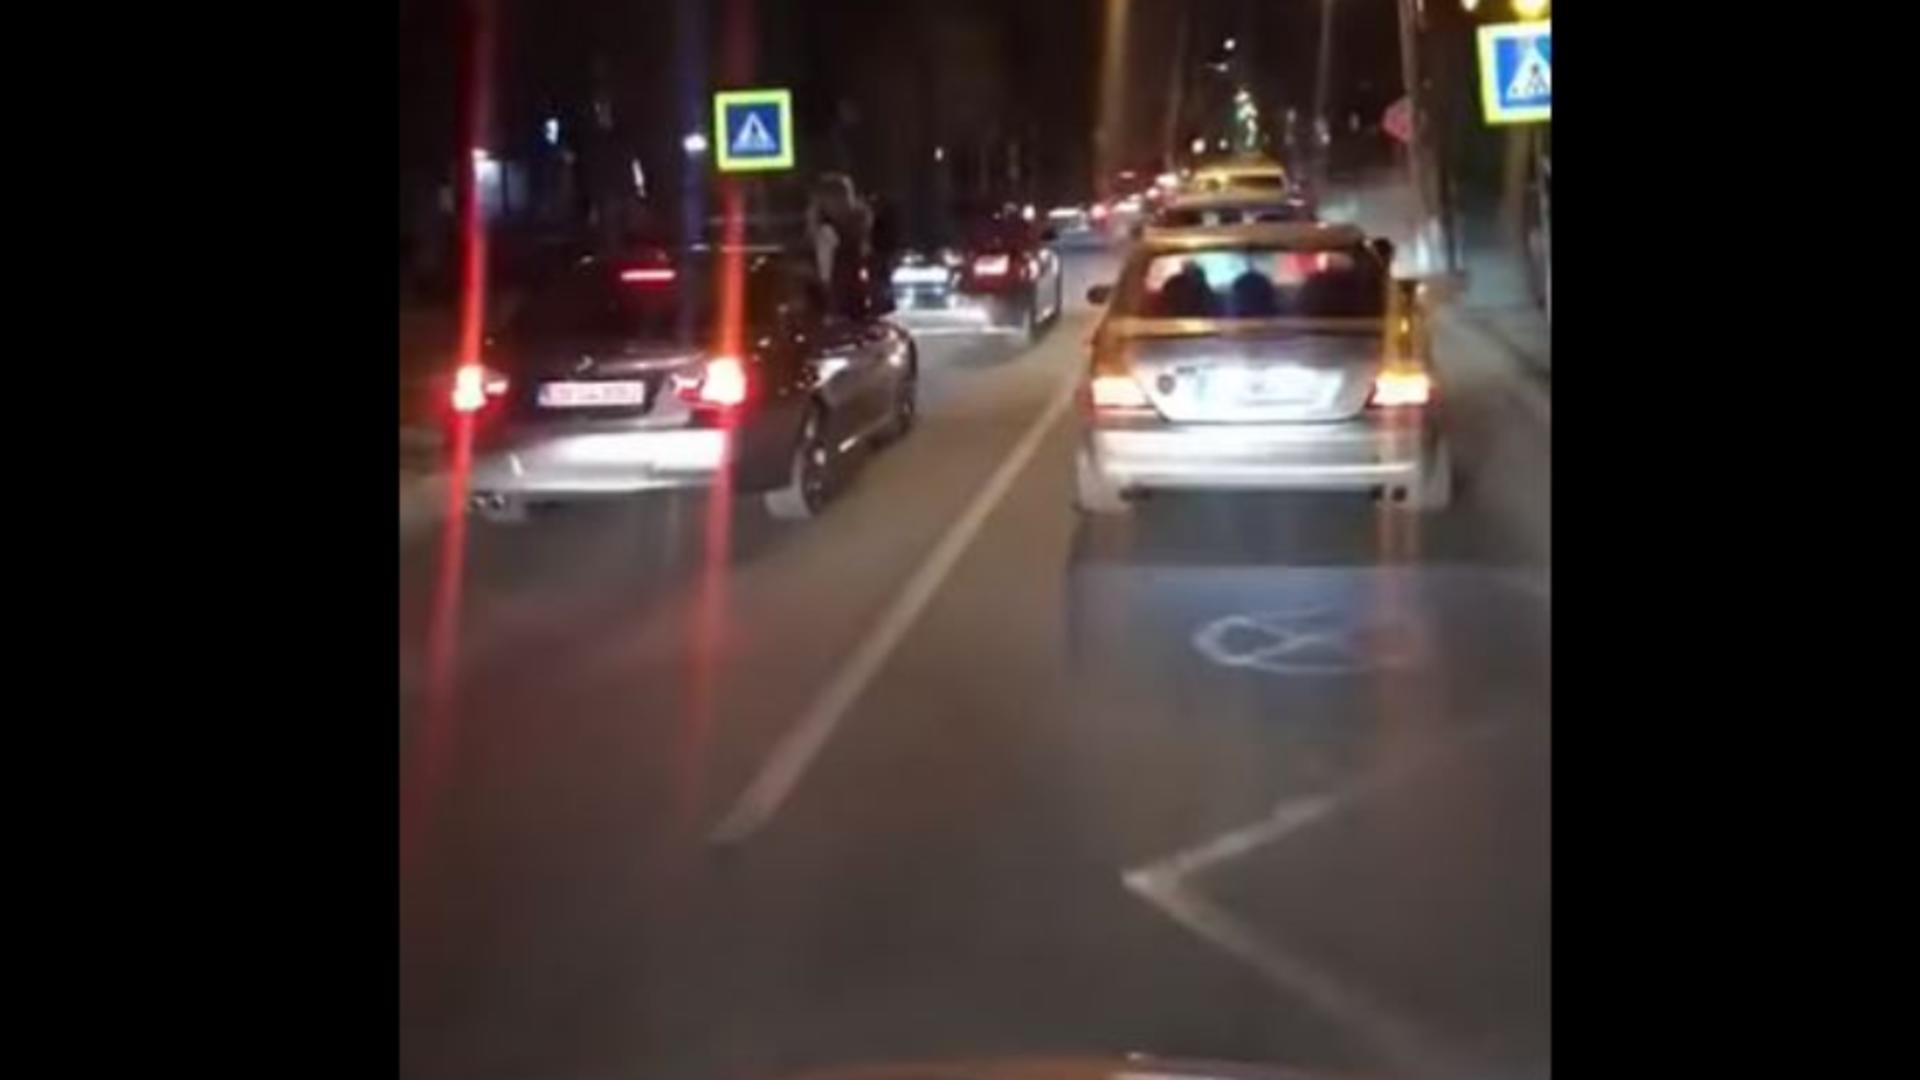 Aproape 60 de șoferi au străbătut străzile din Bistriţa cu viteză redusă, cu semnalele de avarie pornite şi claxonând în continuu Foto captură video